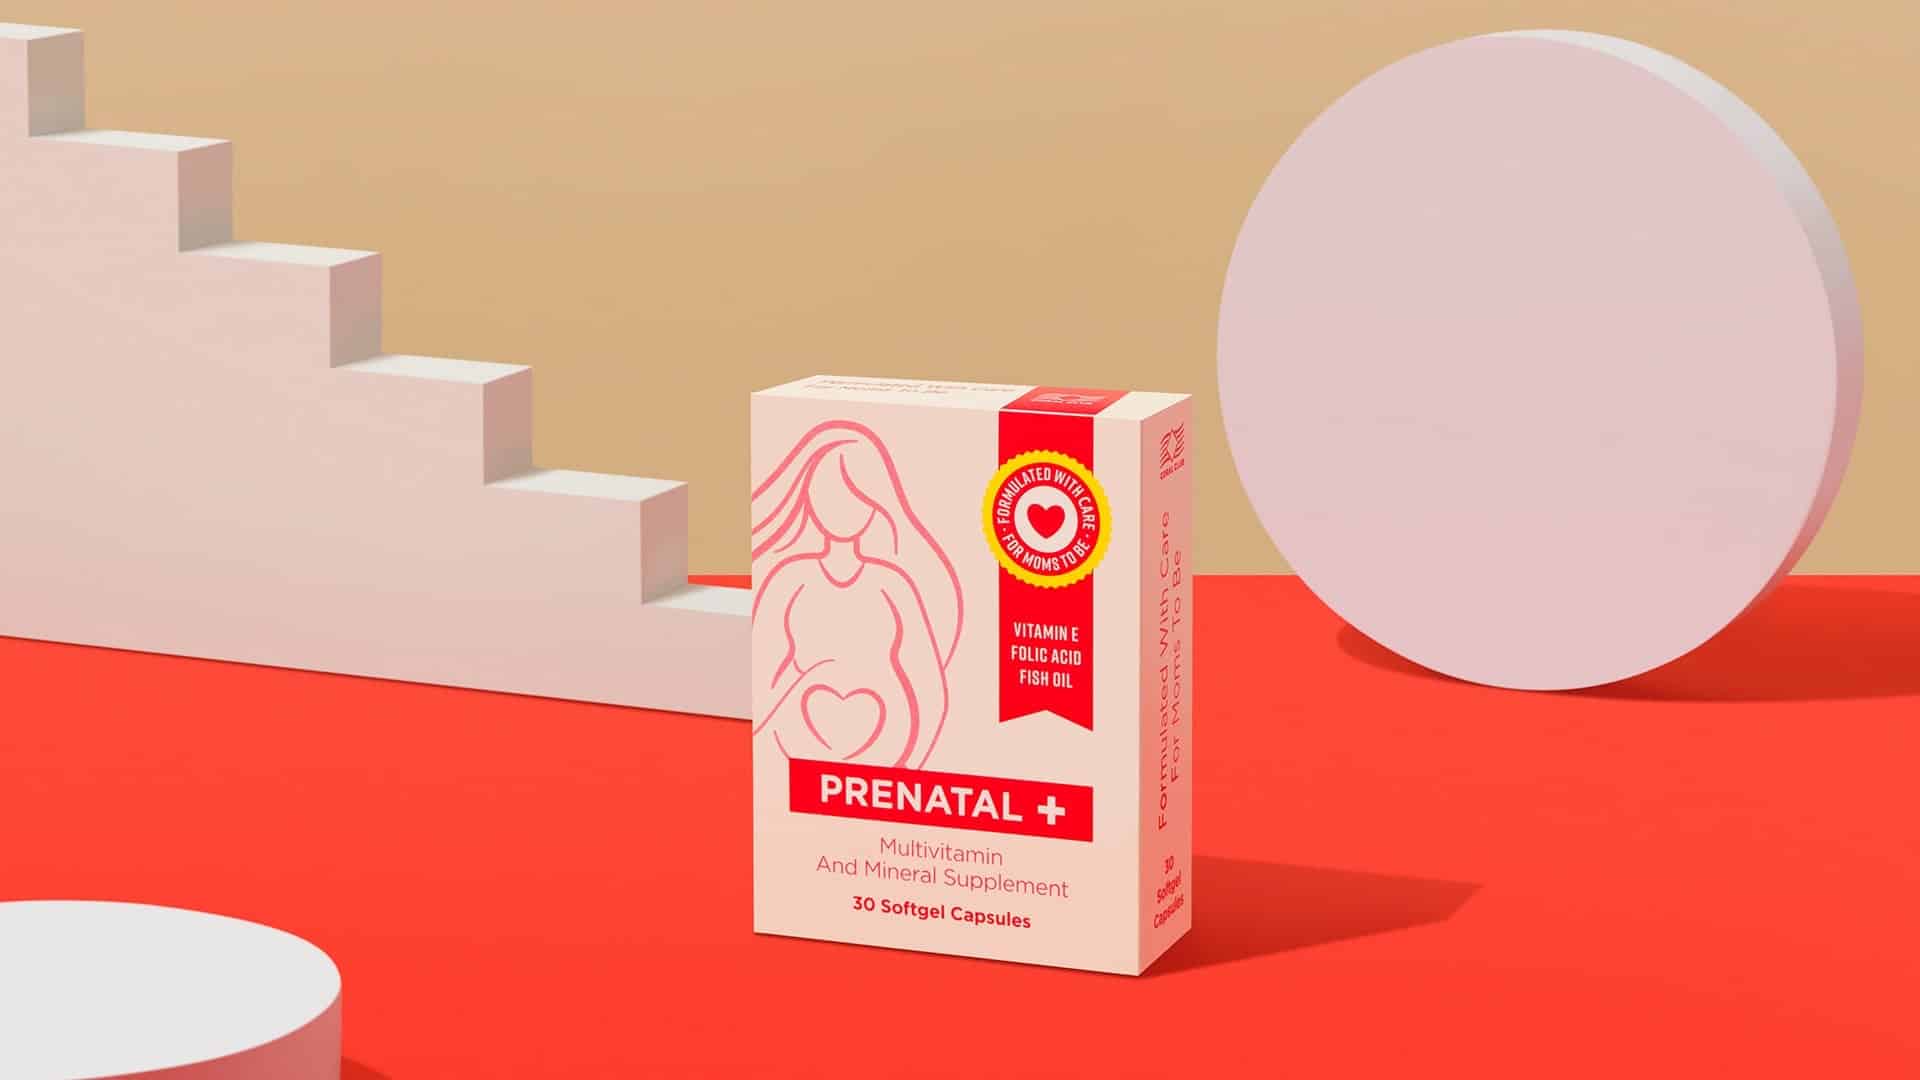 Prenatals +